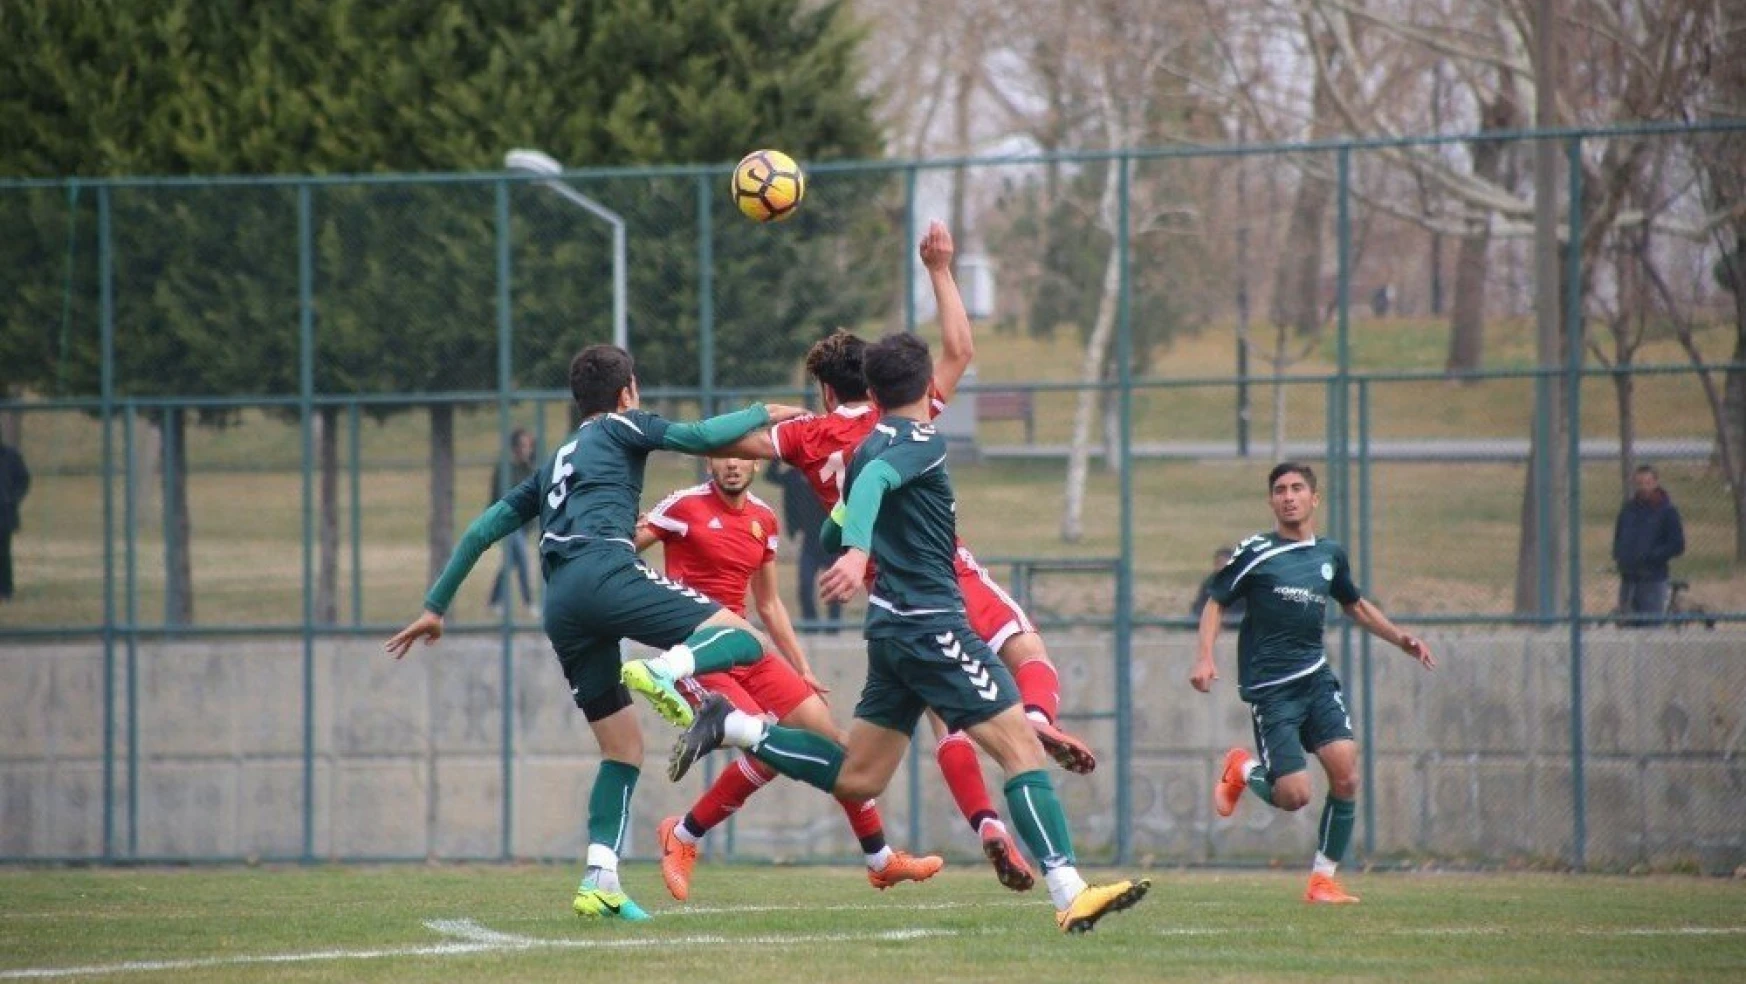 U21 Ligi'nde E. Yeni Malatyaspor ile A. Konyaspor yenişemedi
